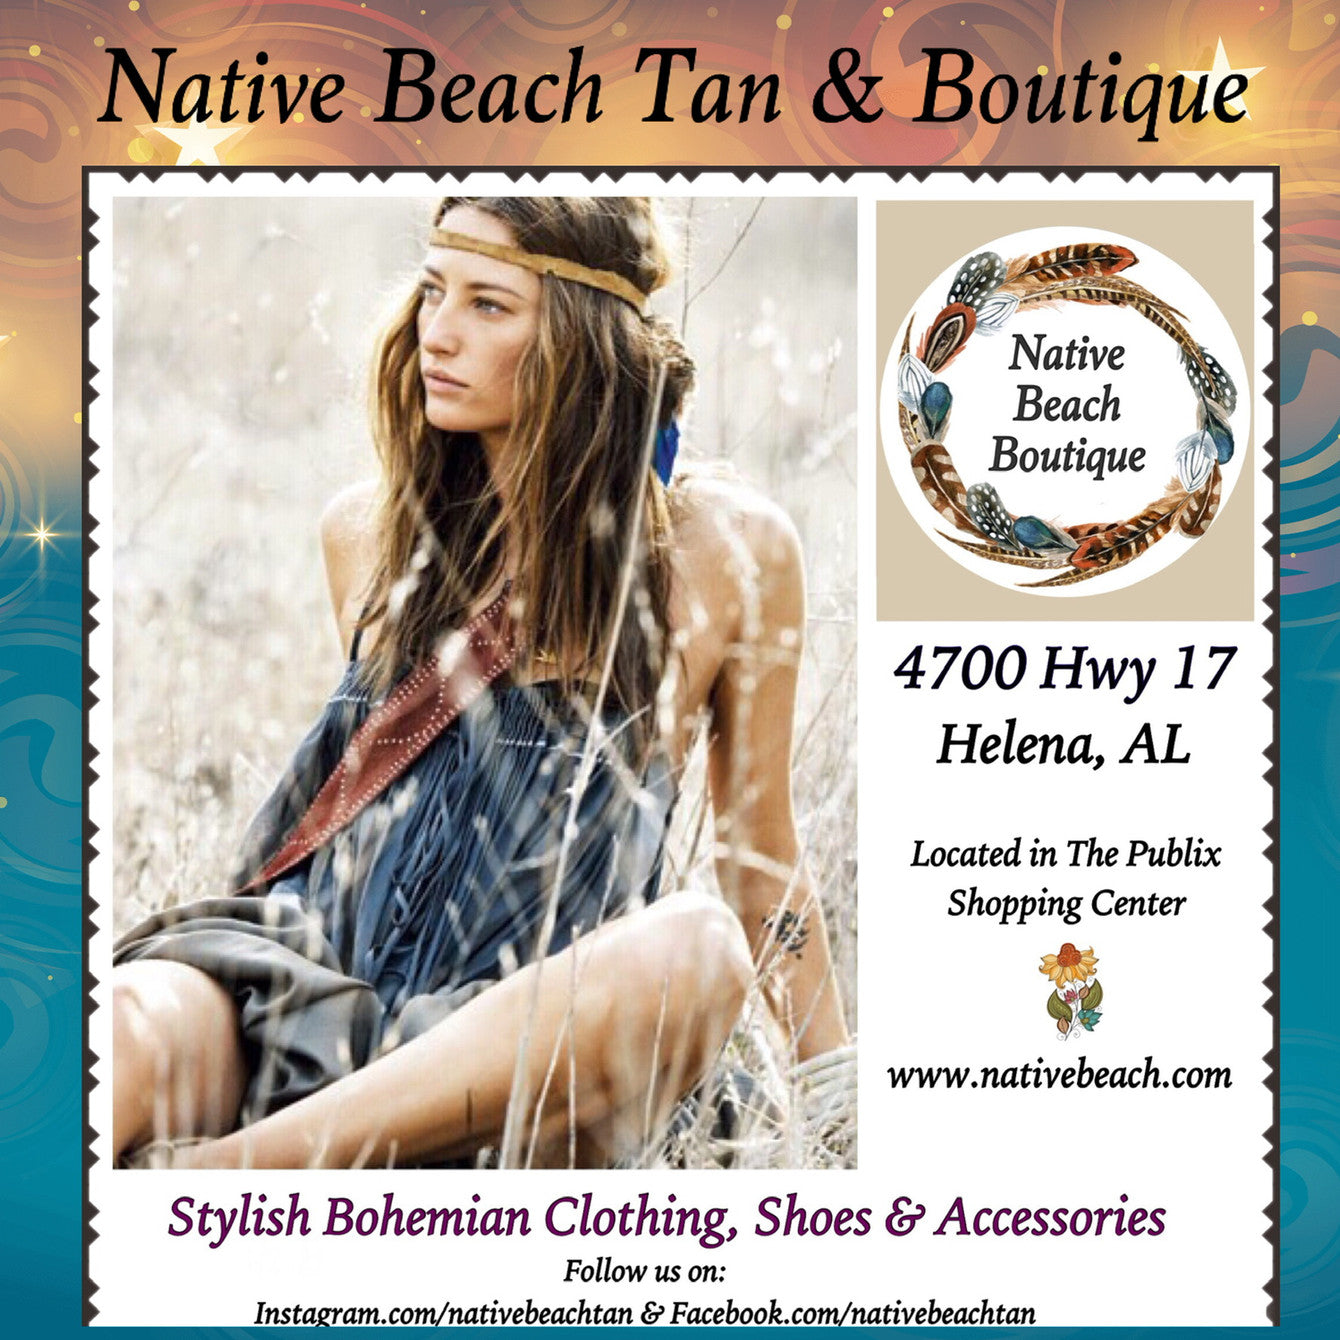 Native Beach Boutique